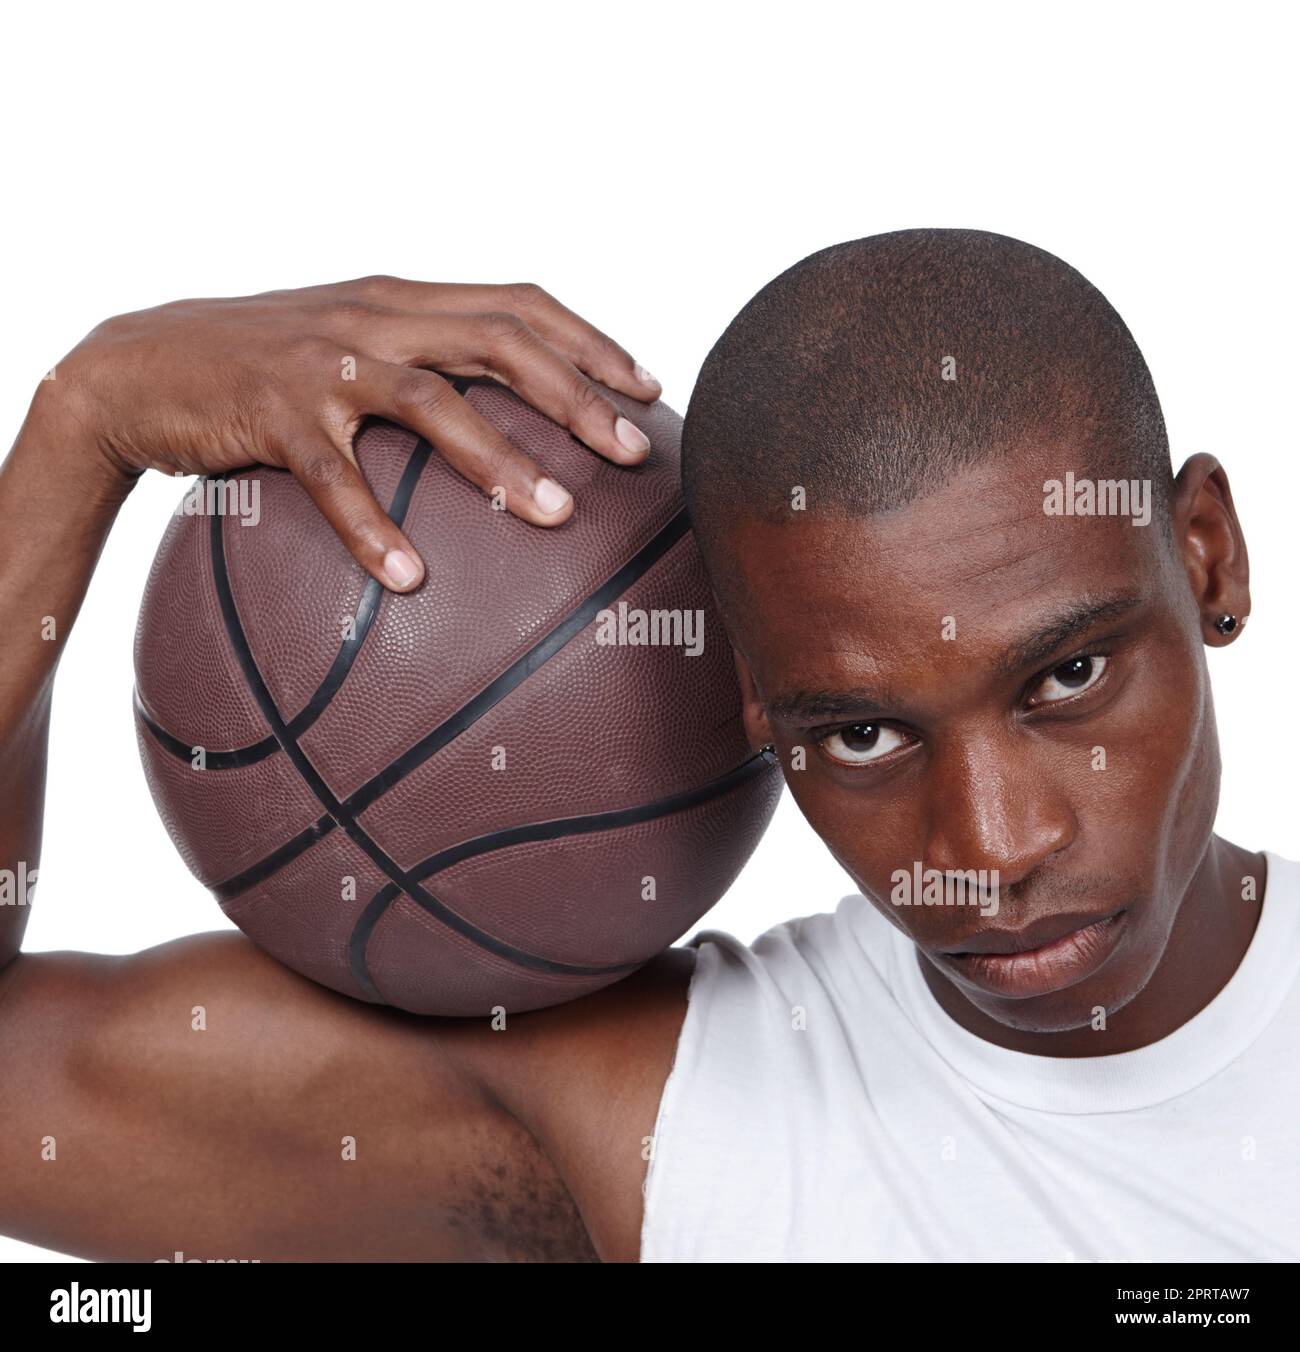 Vers le haut pour un jeu. Portrait en studio d'un jeune joueur de basket-ball debout avec son ballon de basket-ball Banque D'Images